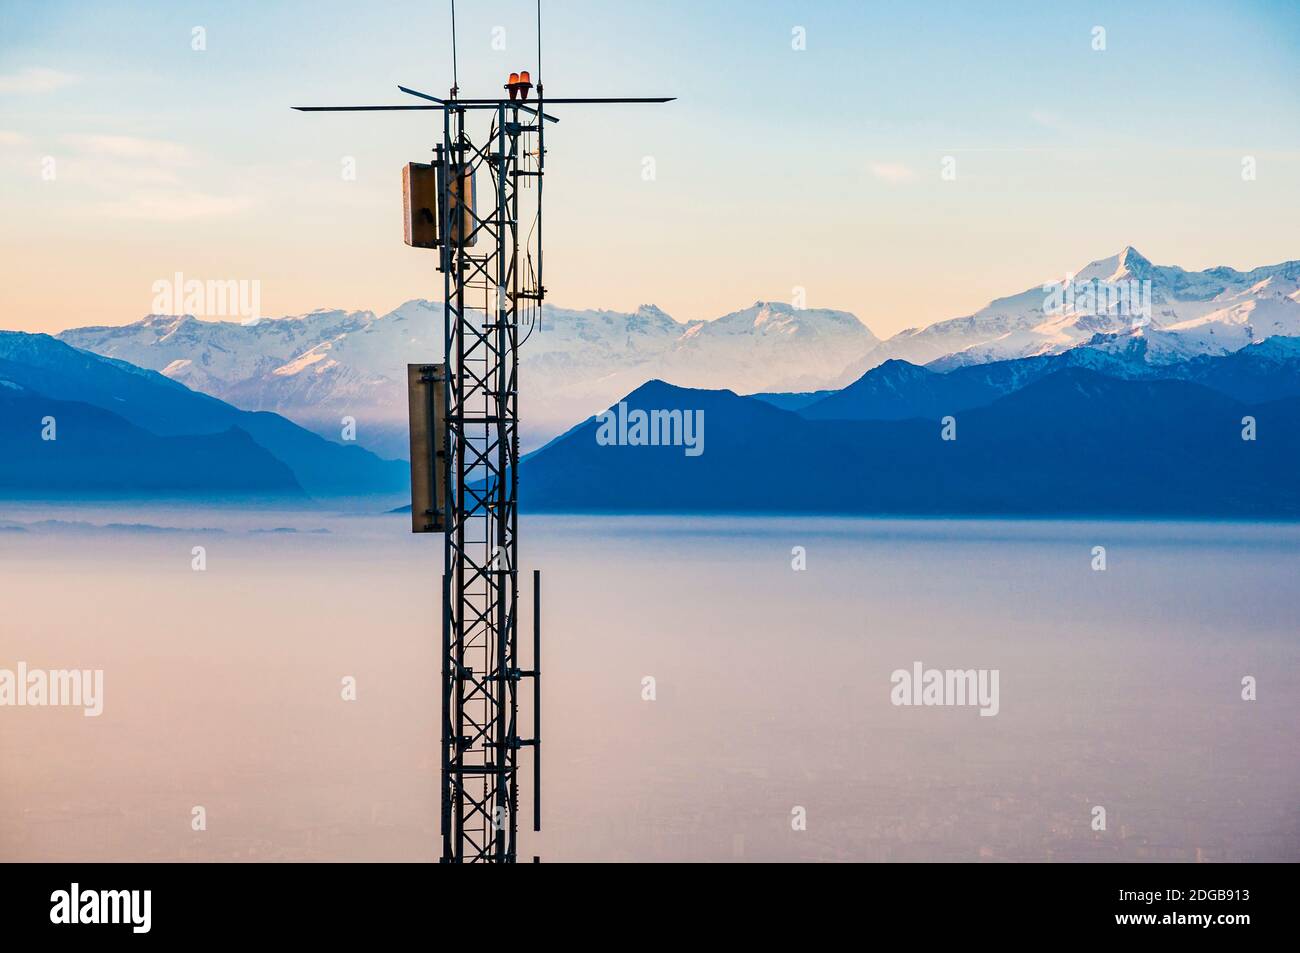 Antenna per telecomunicazioni per radio, televisione e telefonia, con le  Alpi sullo sfondo, Torino, Piemonte, Italia, Europa Foto stock - Alamy